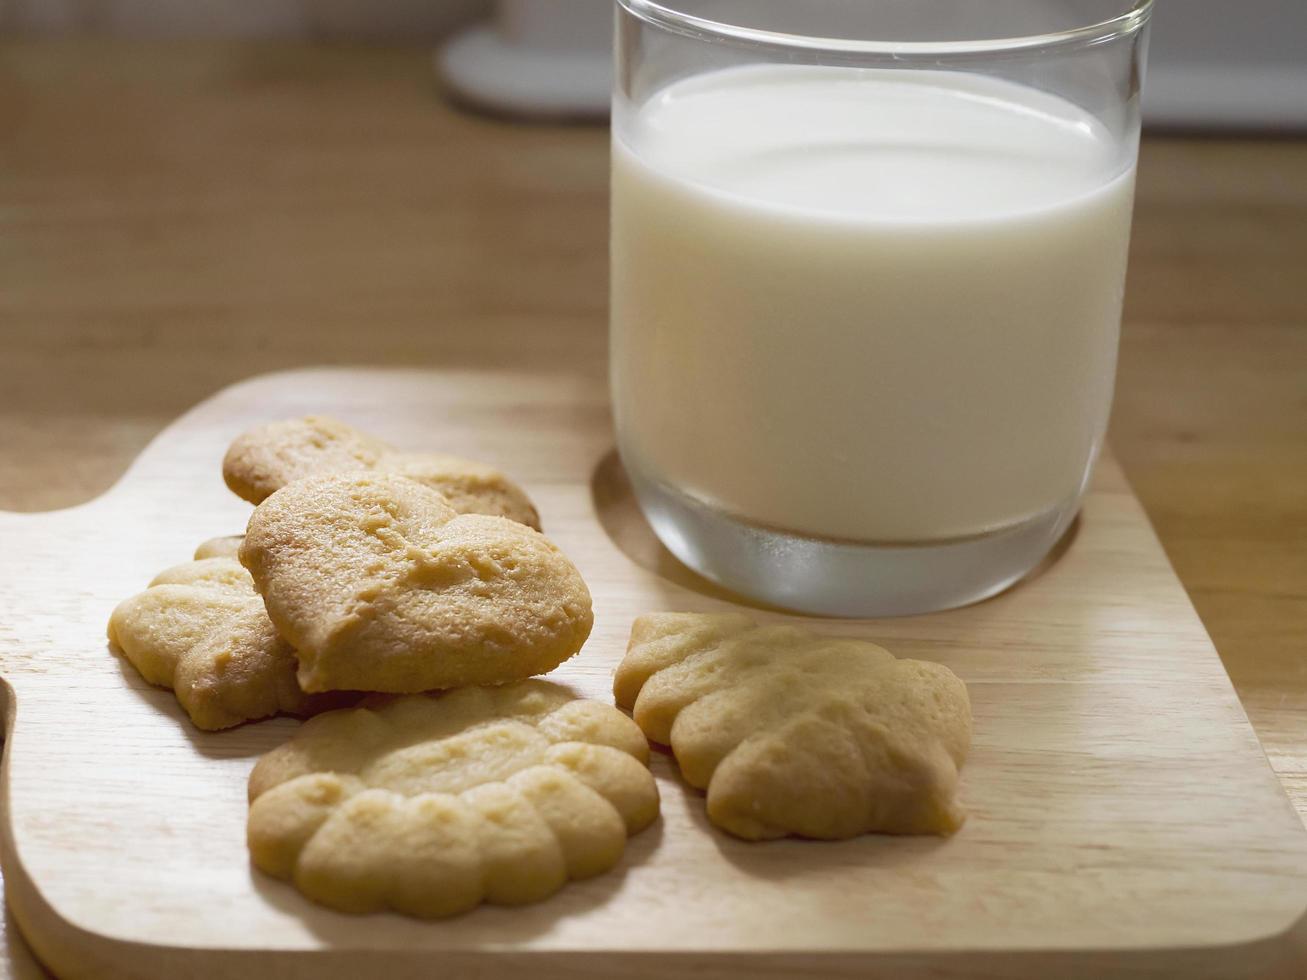 biscuits au beurre avec du lait prêt à servir, collation croustillante fraîcheur laitière photographie de boulangerie pour l'utilisation de fond de dessert sucré alimentaire photo